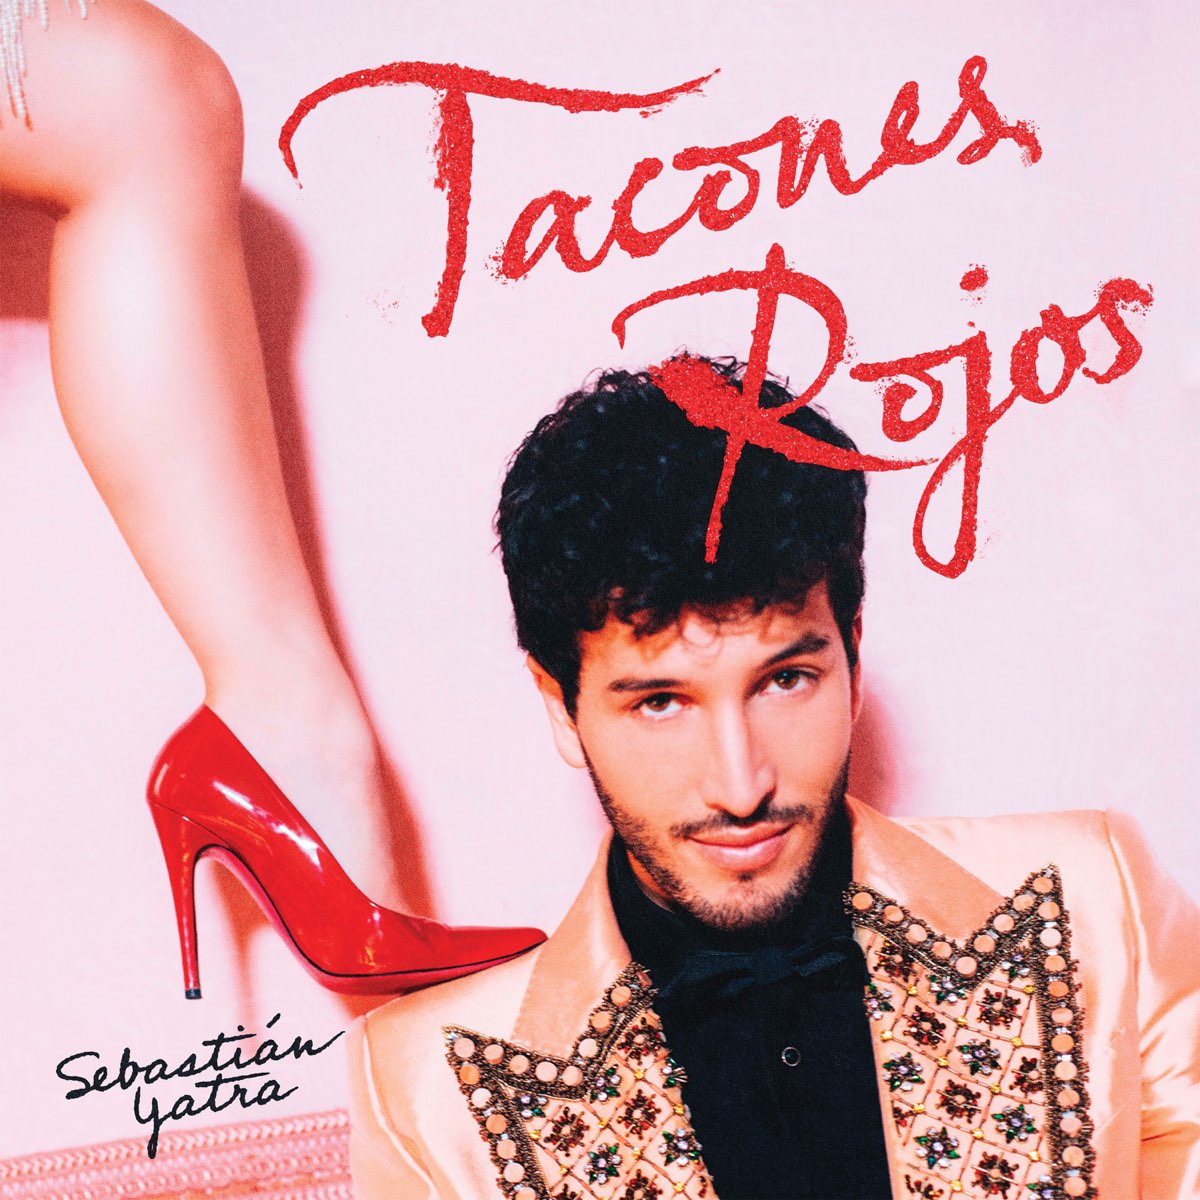 Tacones Rojos - Single de Sebastián Yatra en Apple Music